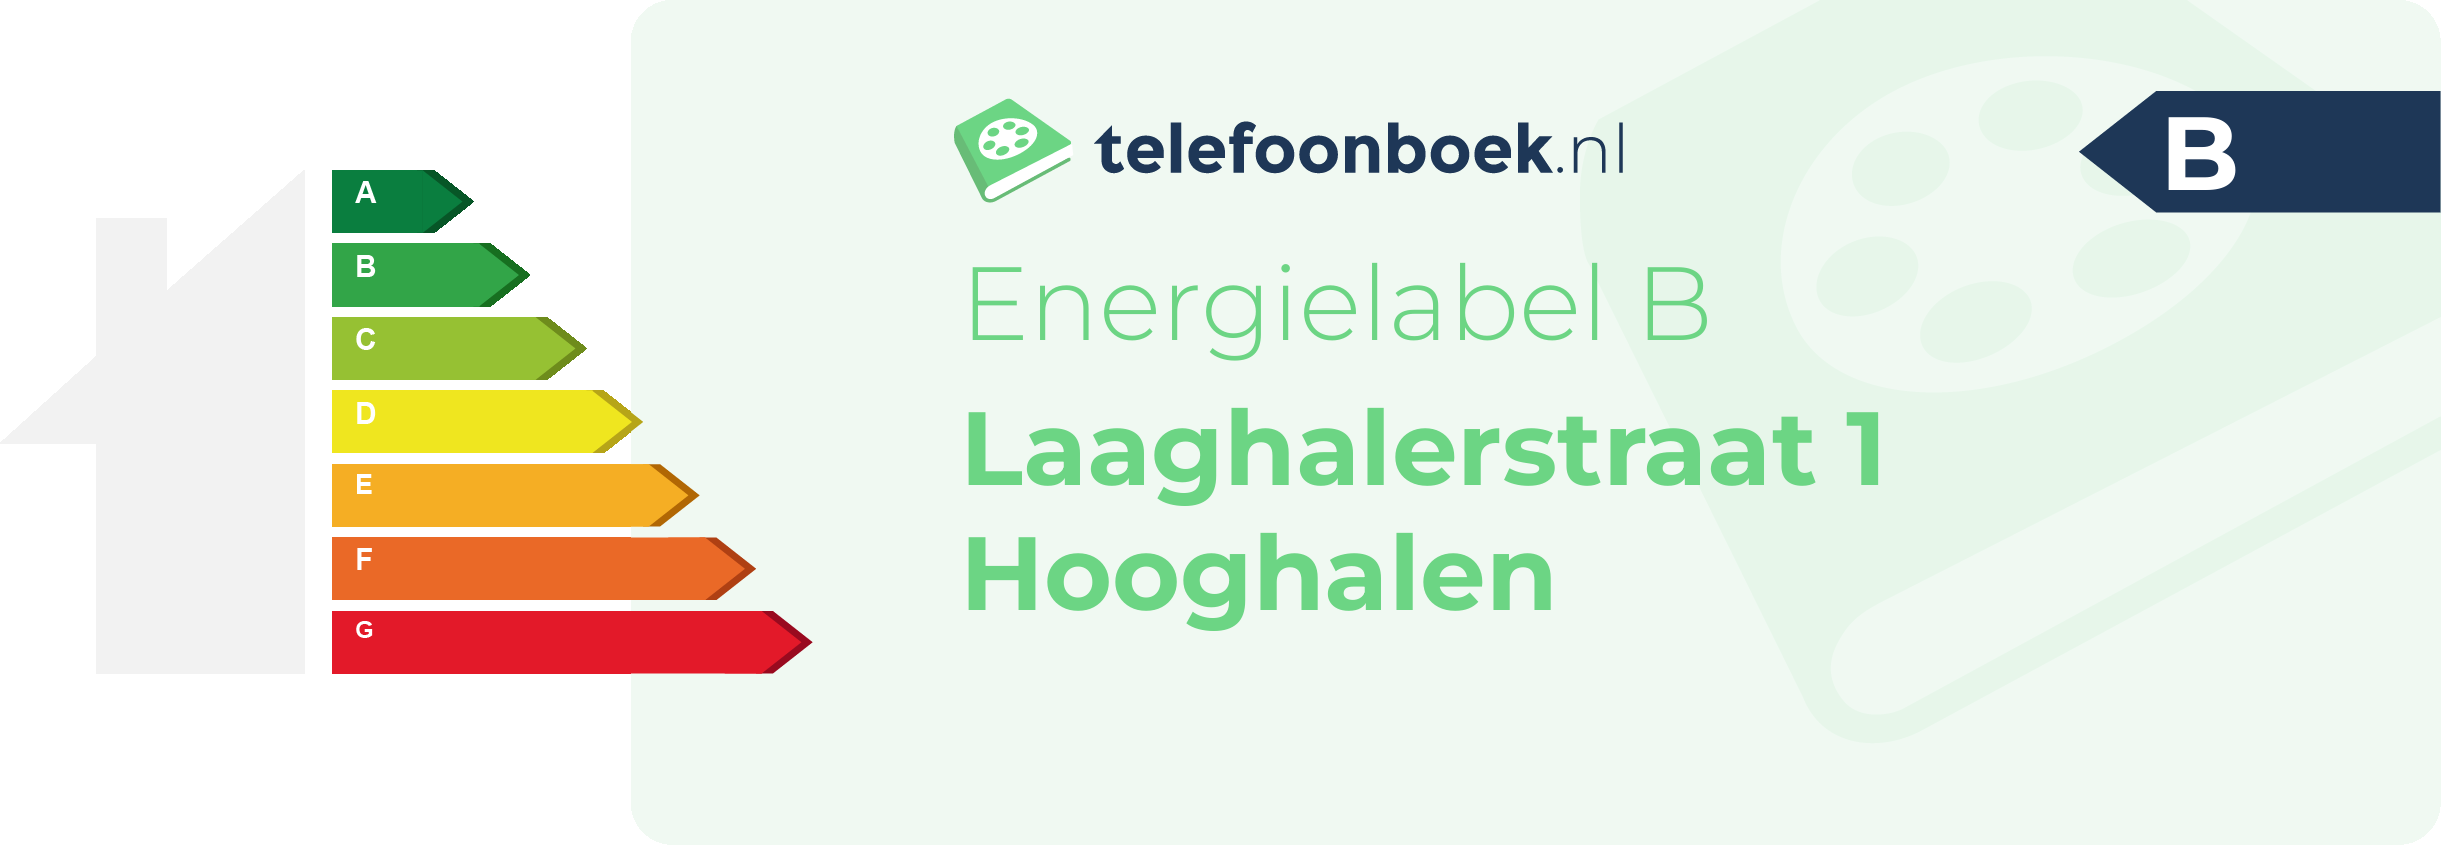 Energielabel Laaghalerstraat 1 Hooghalen